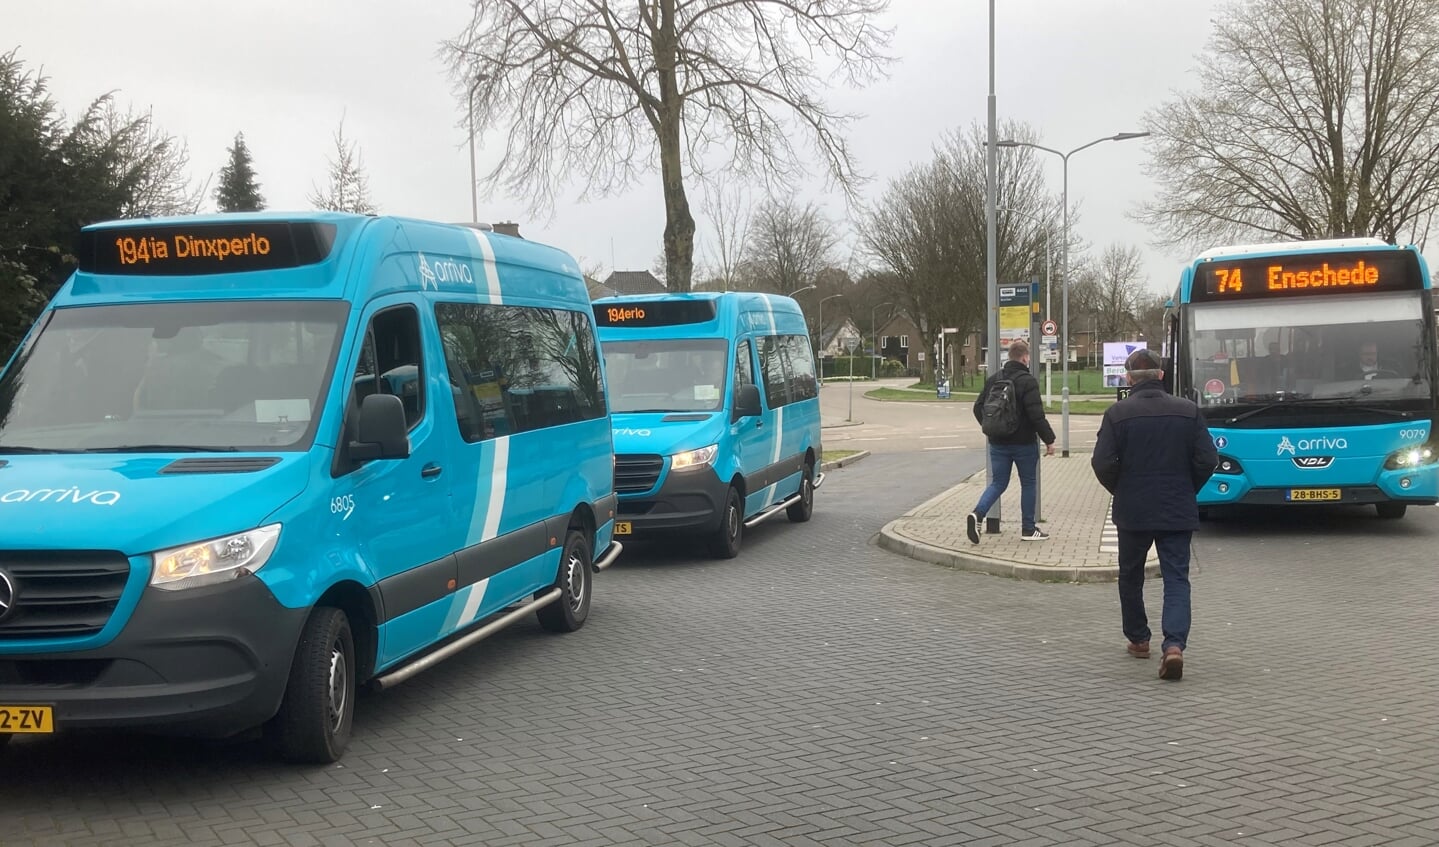 Chauffeur Klaar Oldenhave komt van Halle en biedt bij station Varsseveld aansluiting op de bus naar Enschede, net als collega Nico Huntink die vanaf Dinxperlo kwam. Foto: Mirjam Rensink